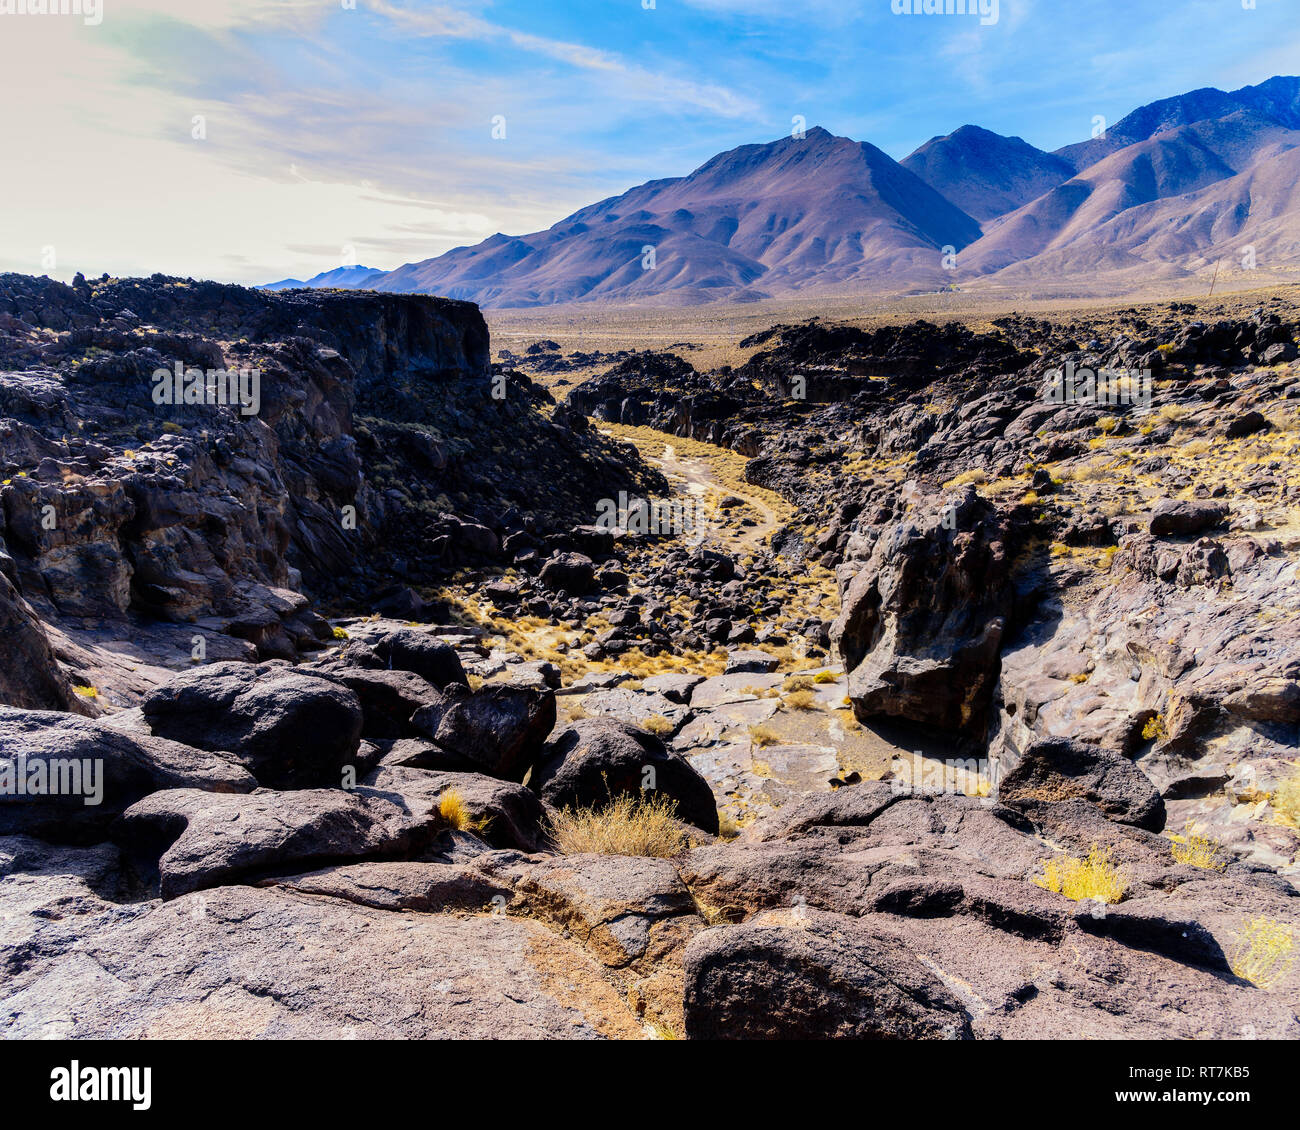 La recherche à travers un terrain accidenté à rocky canyon aux parois déchiquetées menant au désert aride vallée et les montagnes au-delà sous ciel bleu avec des nuages blancs. Banque D'Images